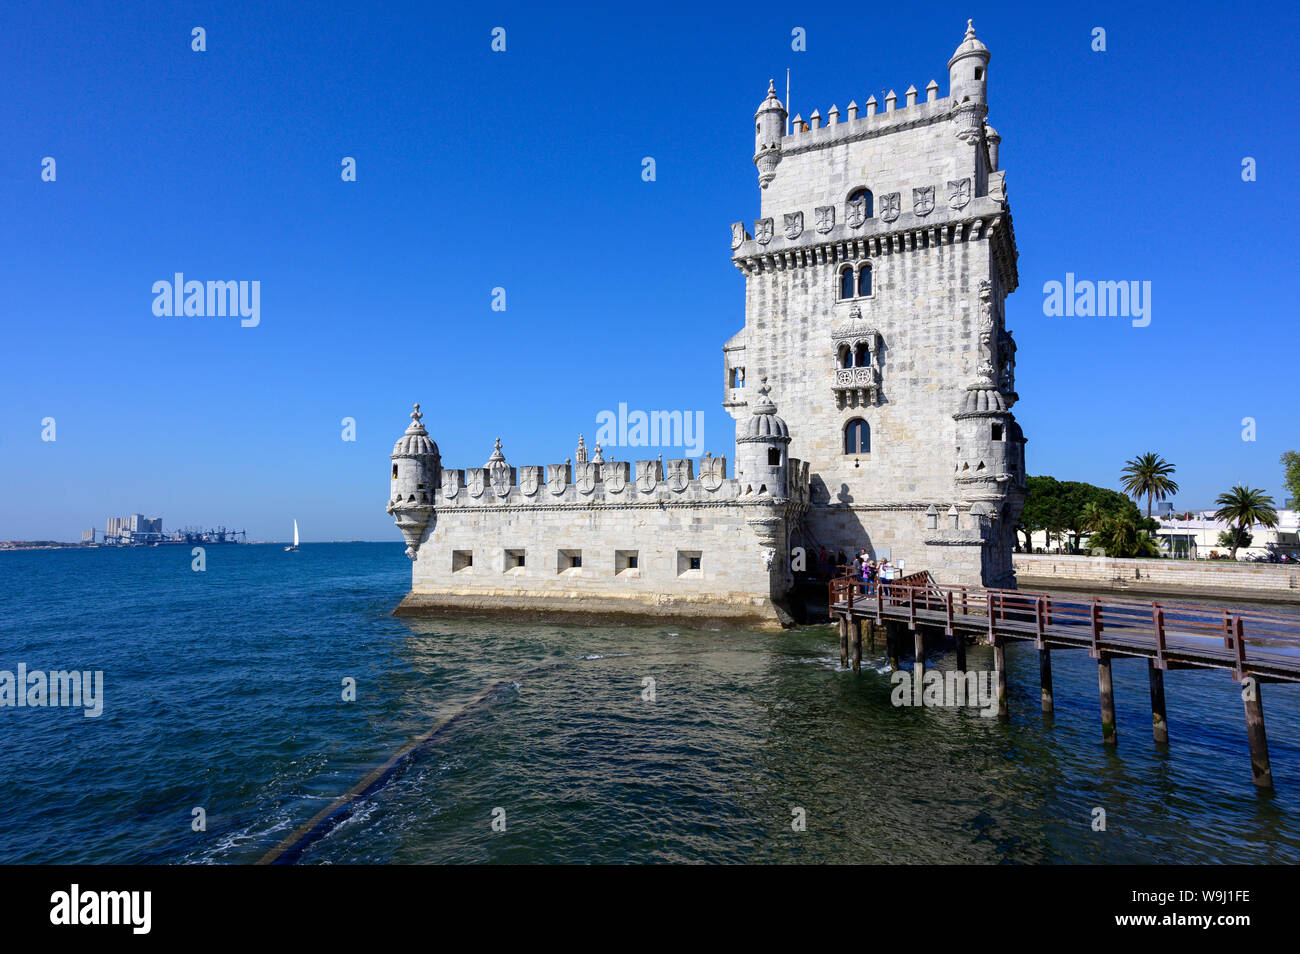 Europa, Europäische, Iberia, Portugal, Portugiesisch, Lissabon, Belem, Turm von Belem, Turm von St. Vincent ist eine Festung aus dem 16. Jahrhundert, 30074391 *** Loc Stockfoto